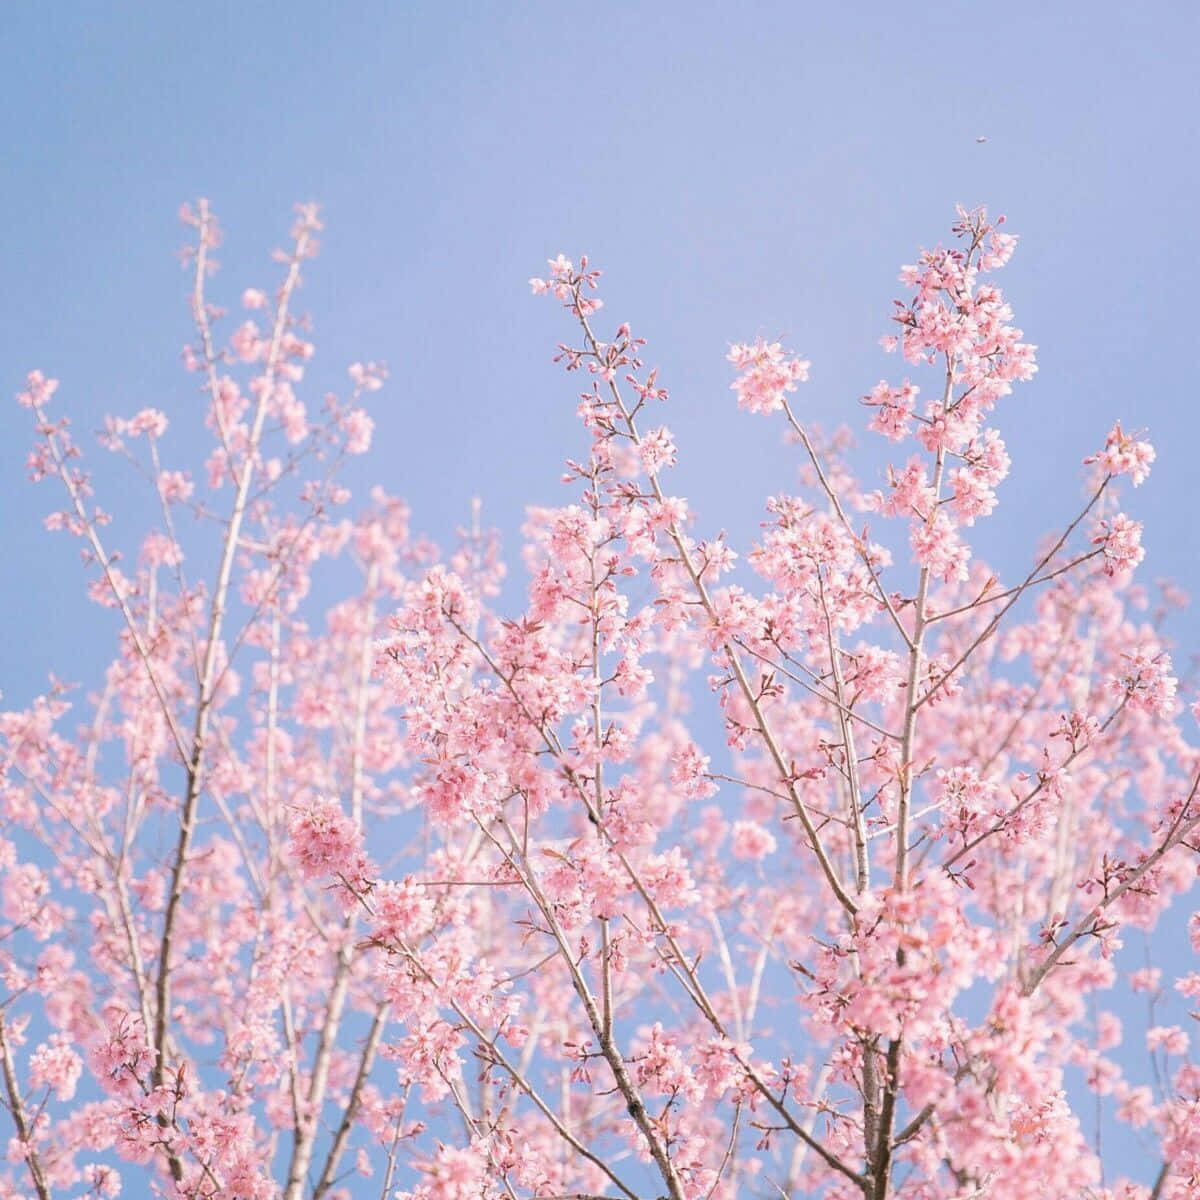 "Aromatic Sakura in Springtime"